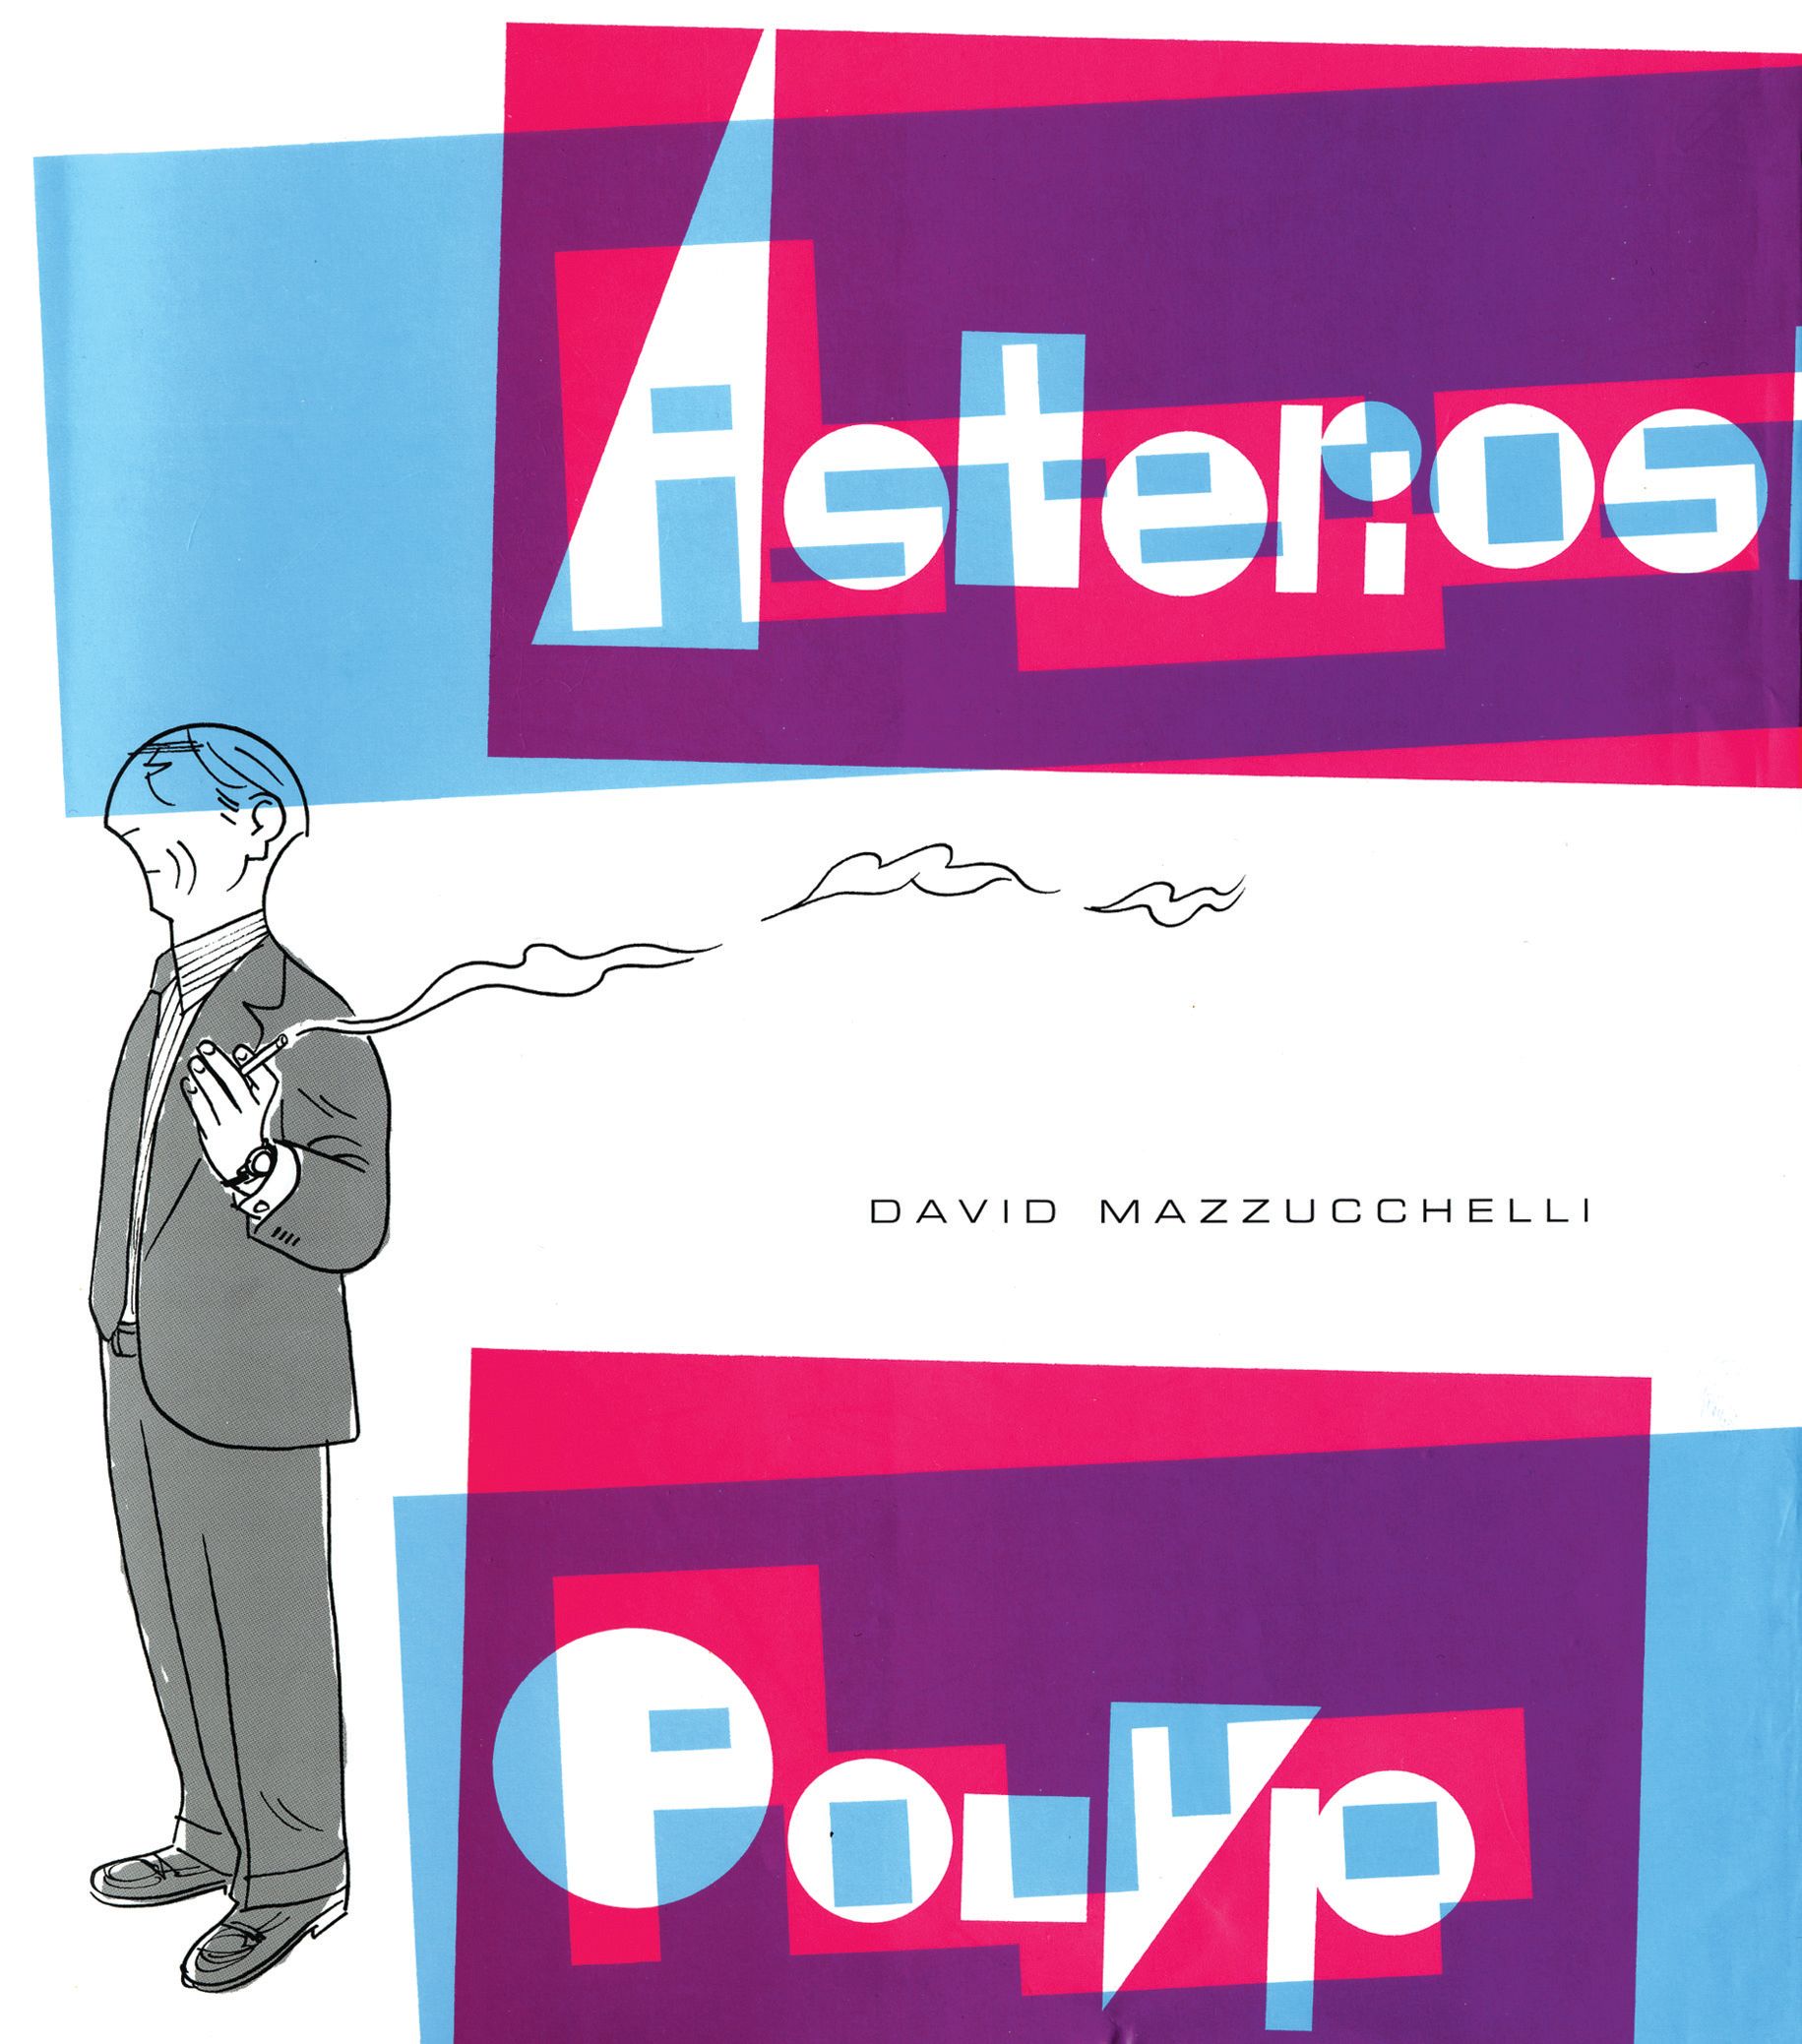 Asterios Polyp (cover)